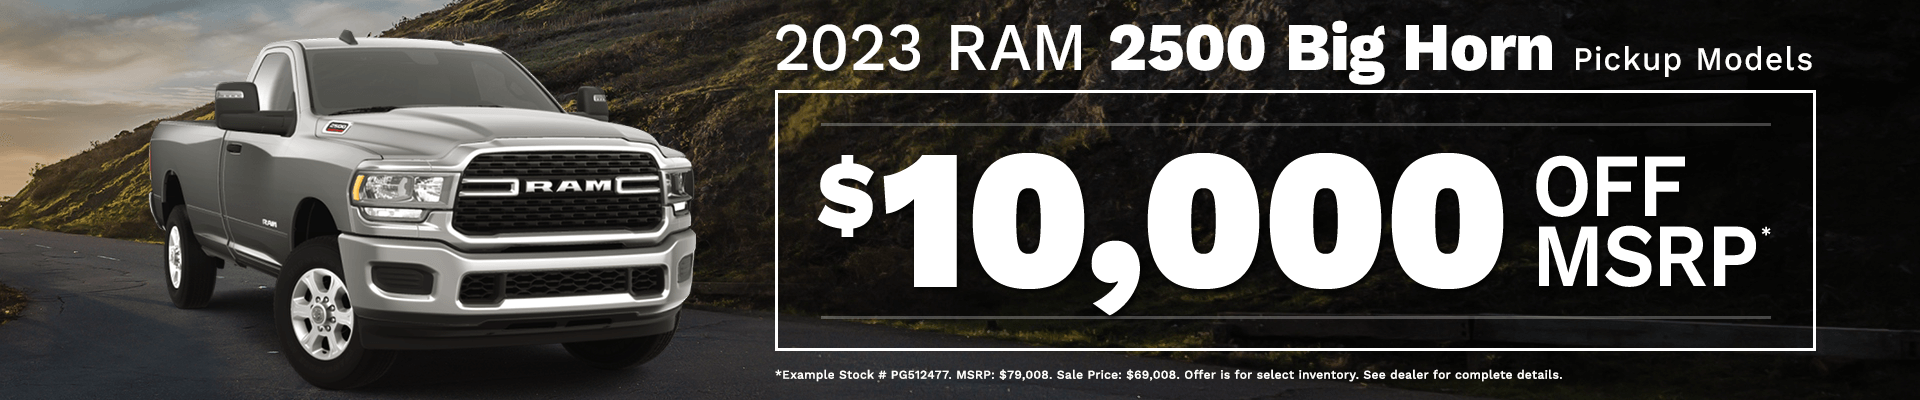 2023 RAM 2500 Big Horn